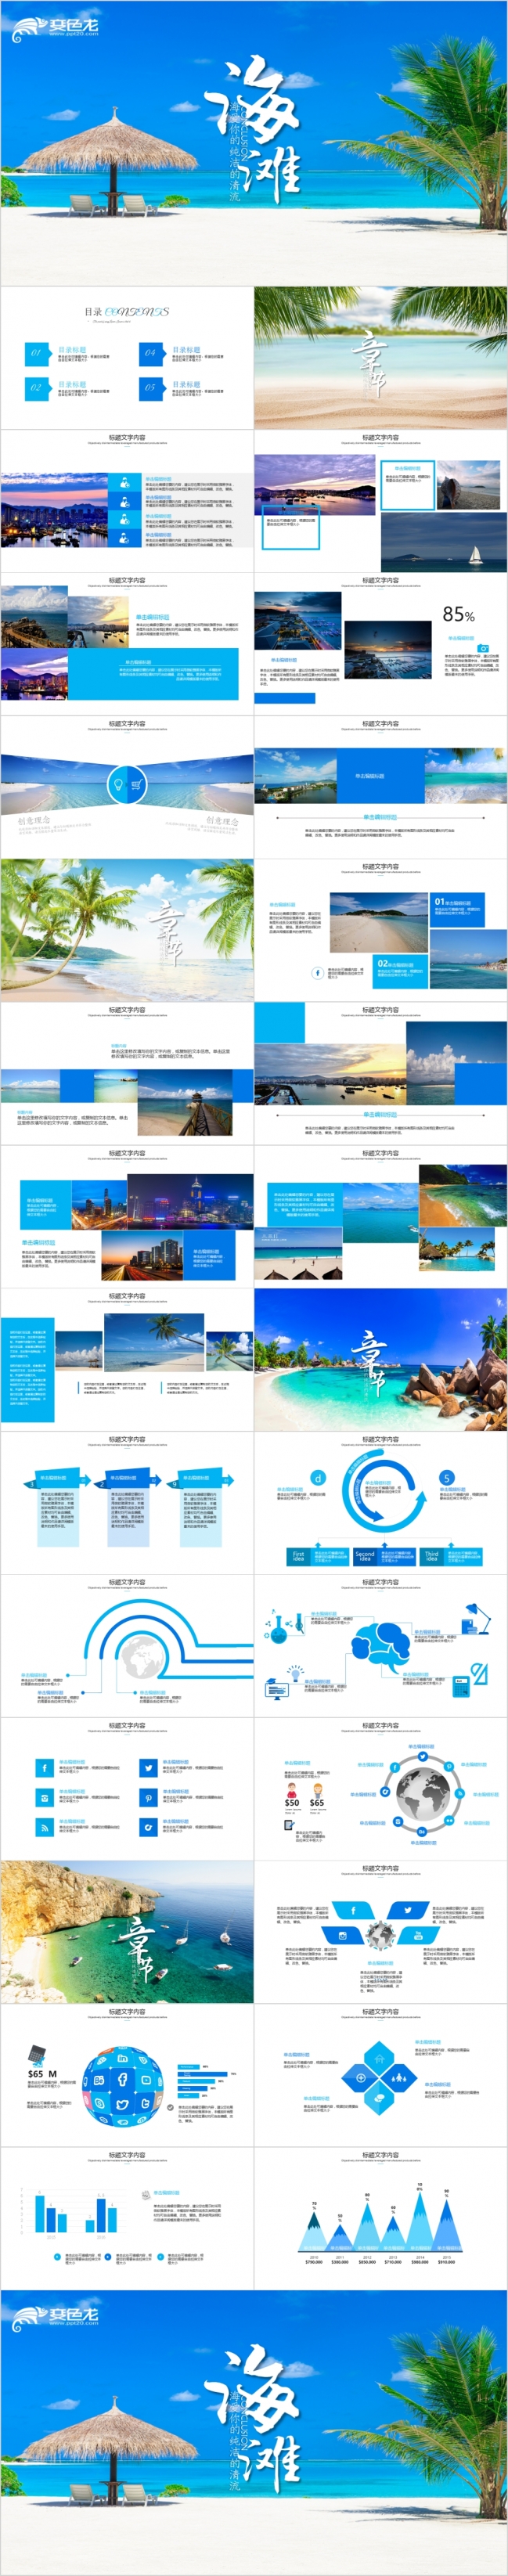 唯美三亚旅游海南岛宣传册PPT动态模板